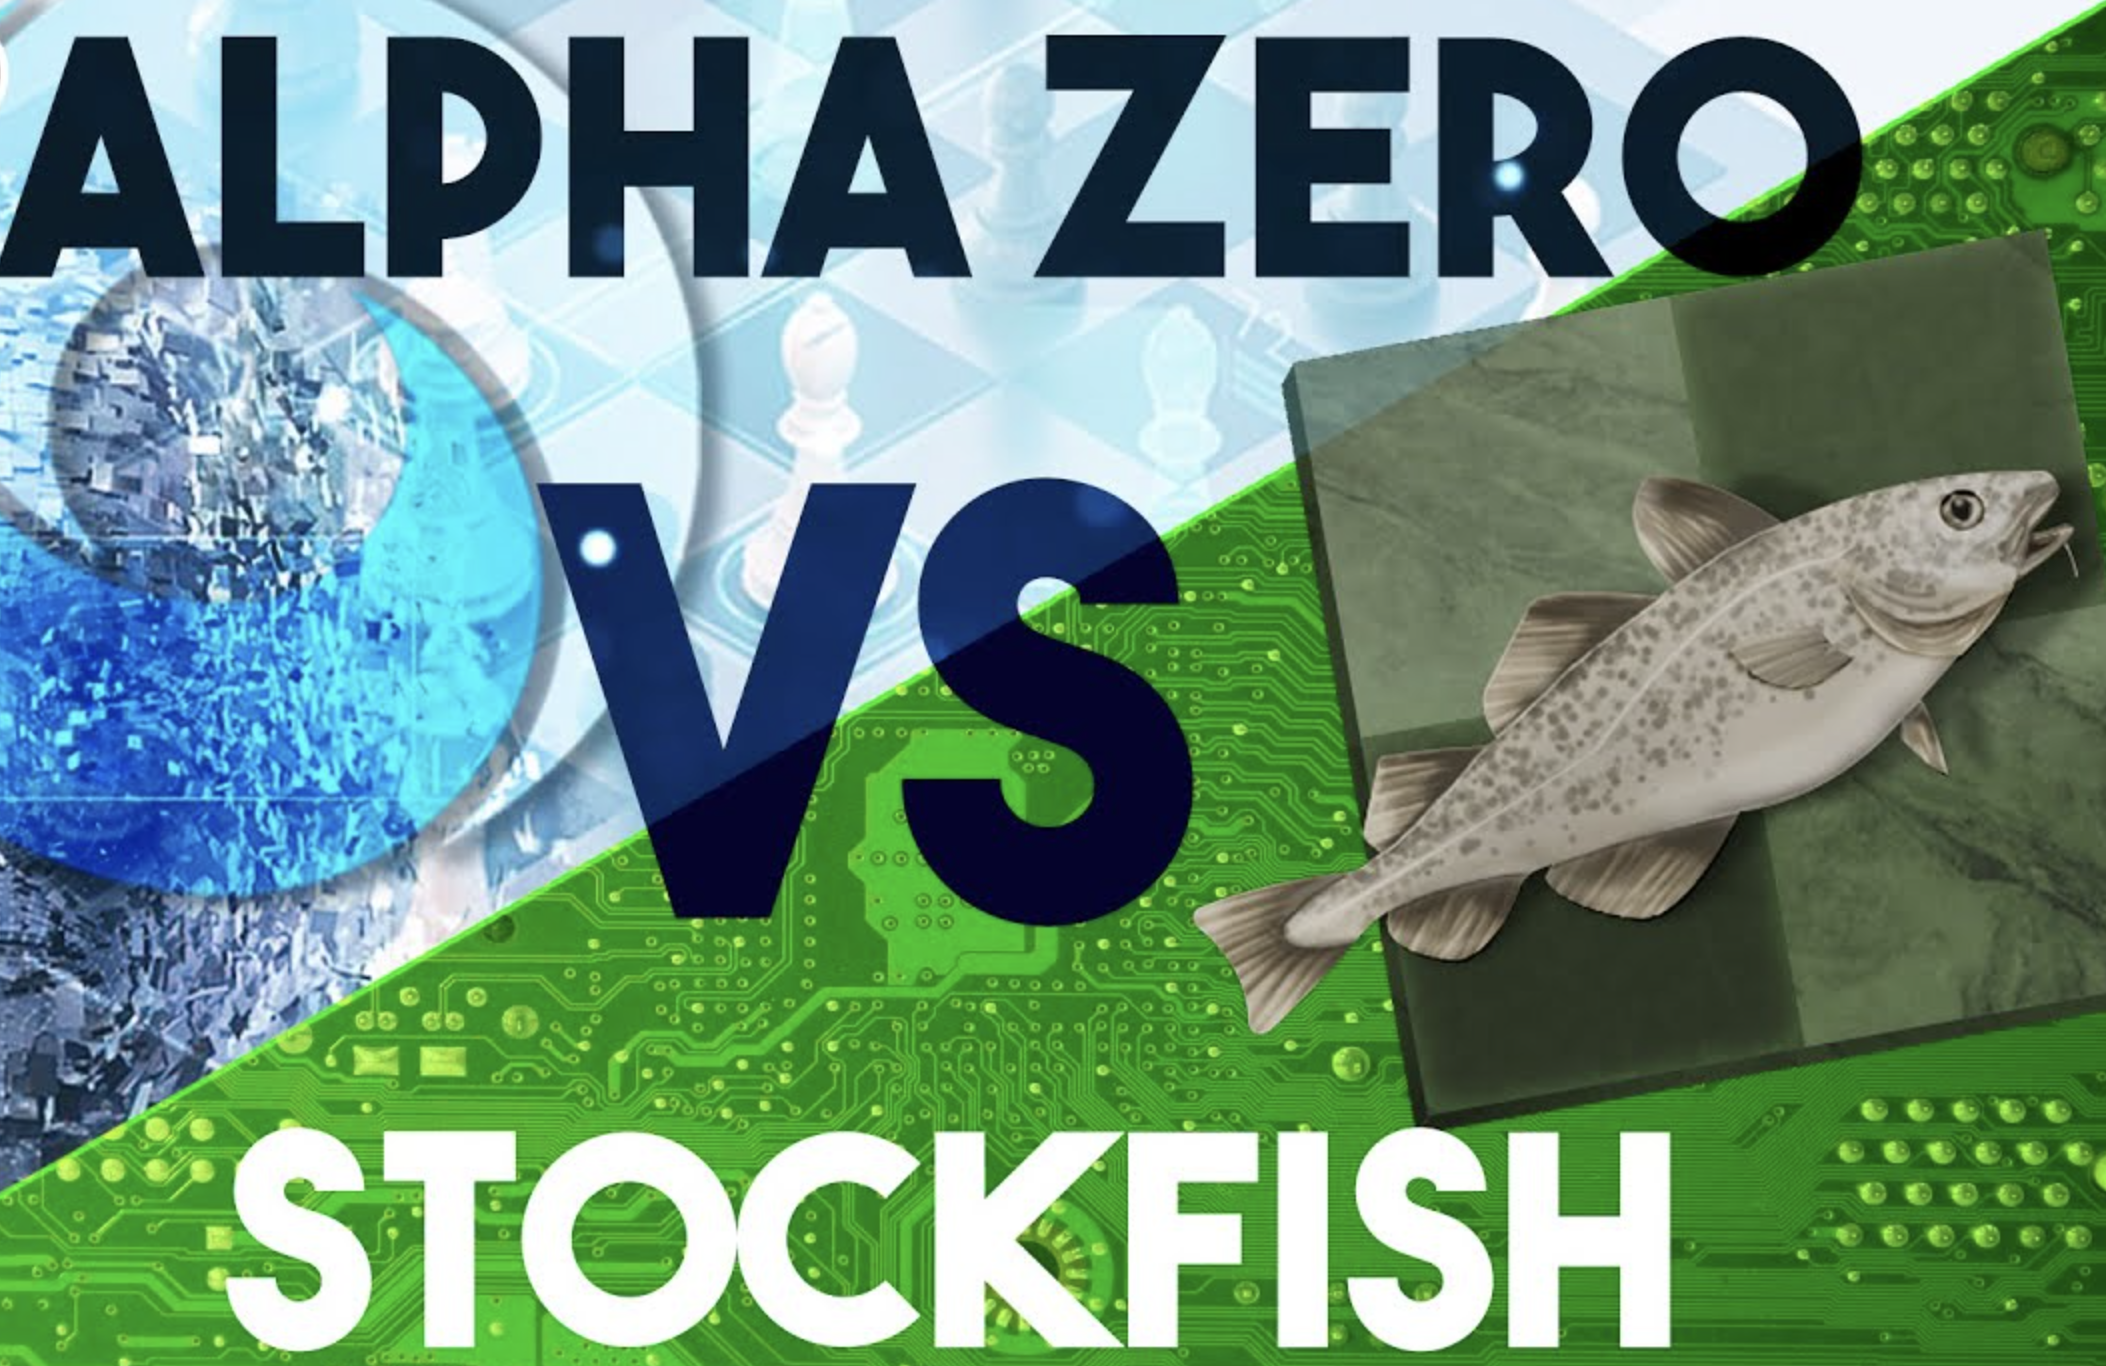 Alphazero vs Stockfish: the Chess Algorithms War